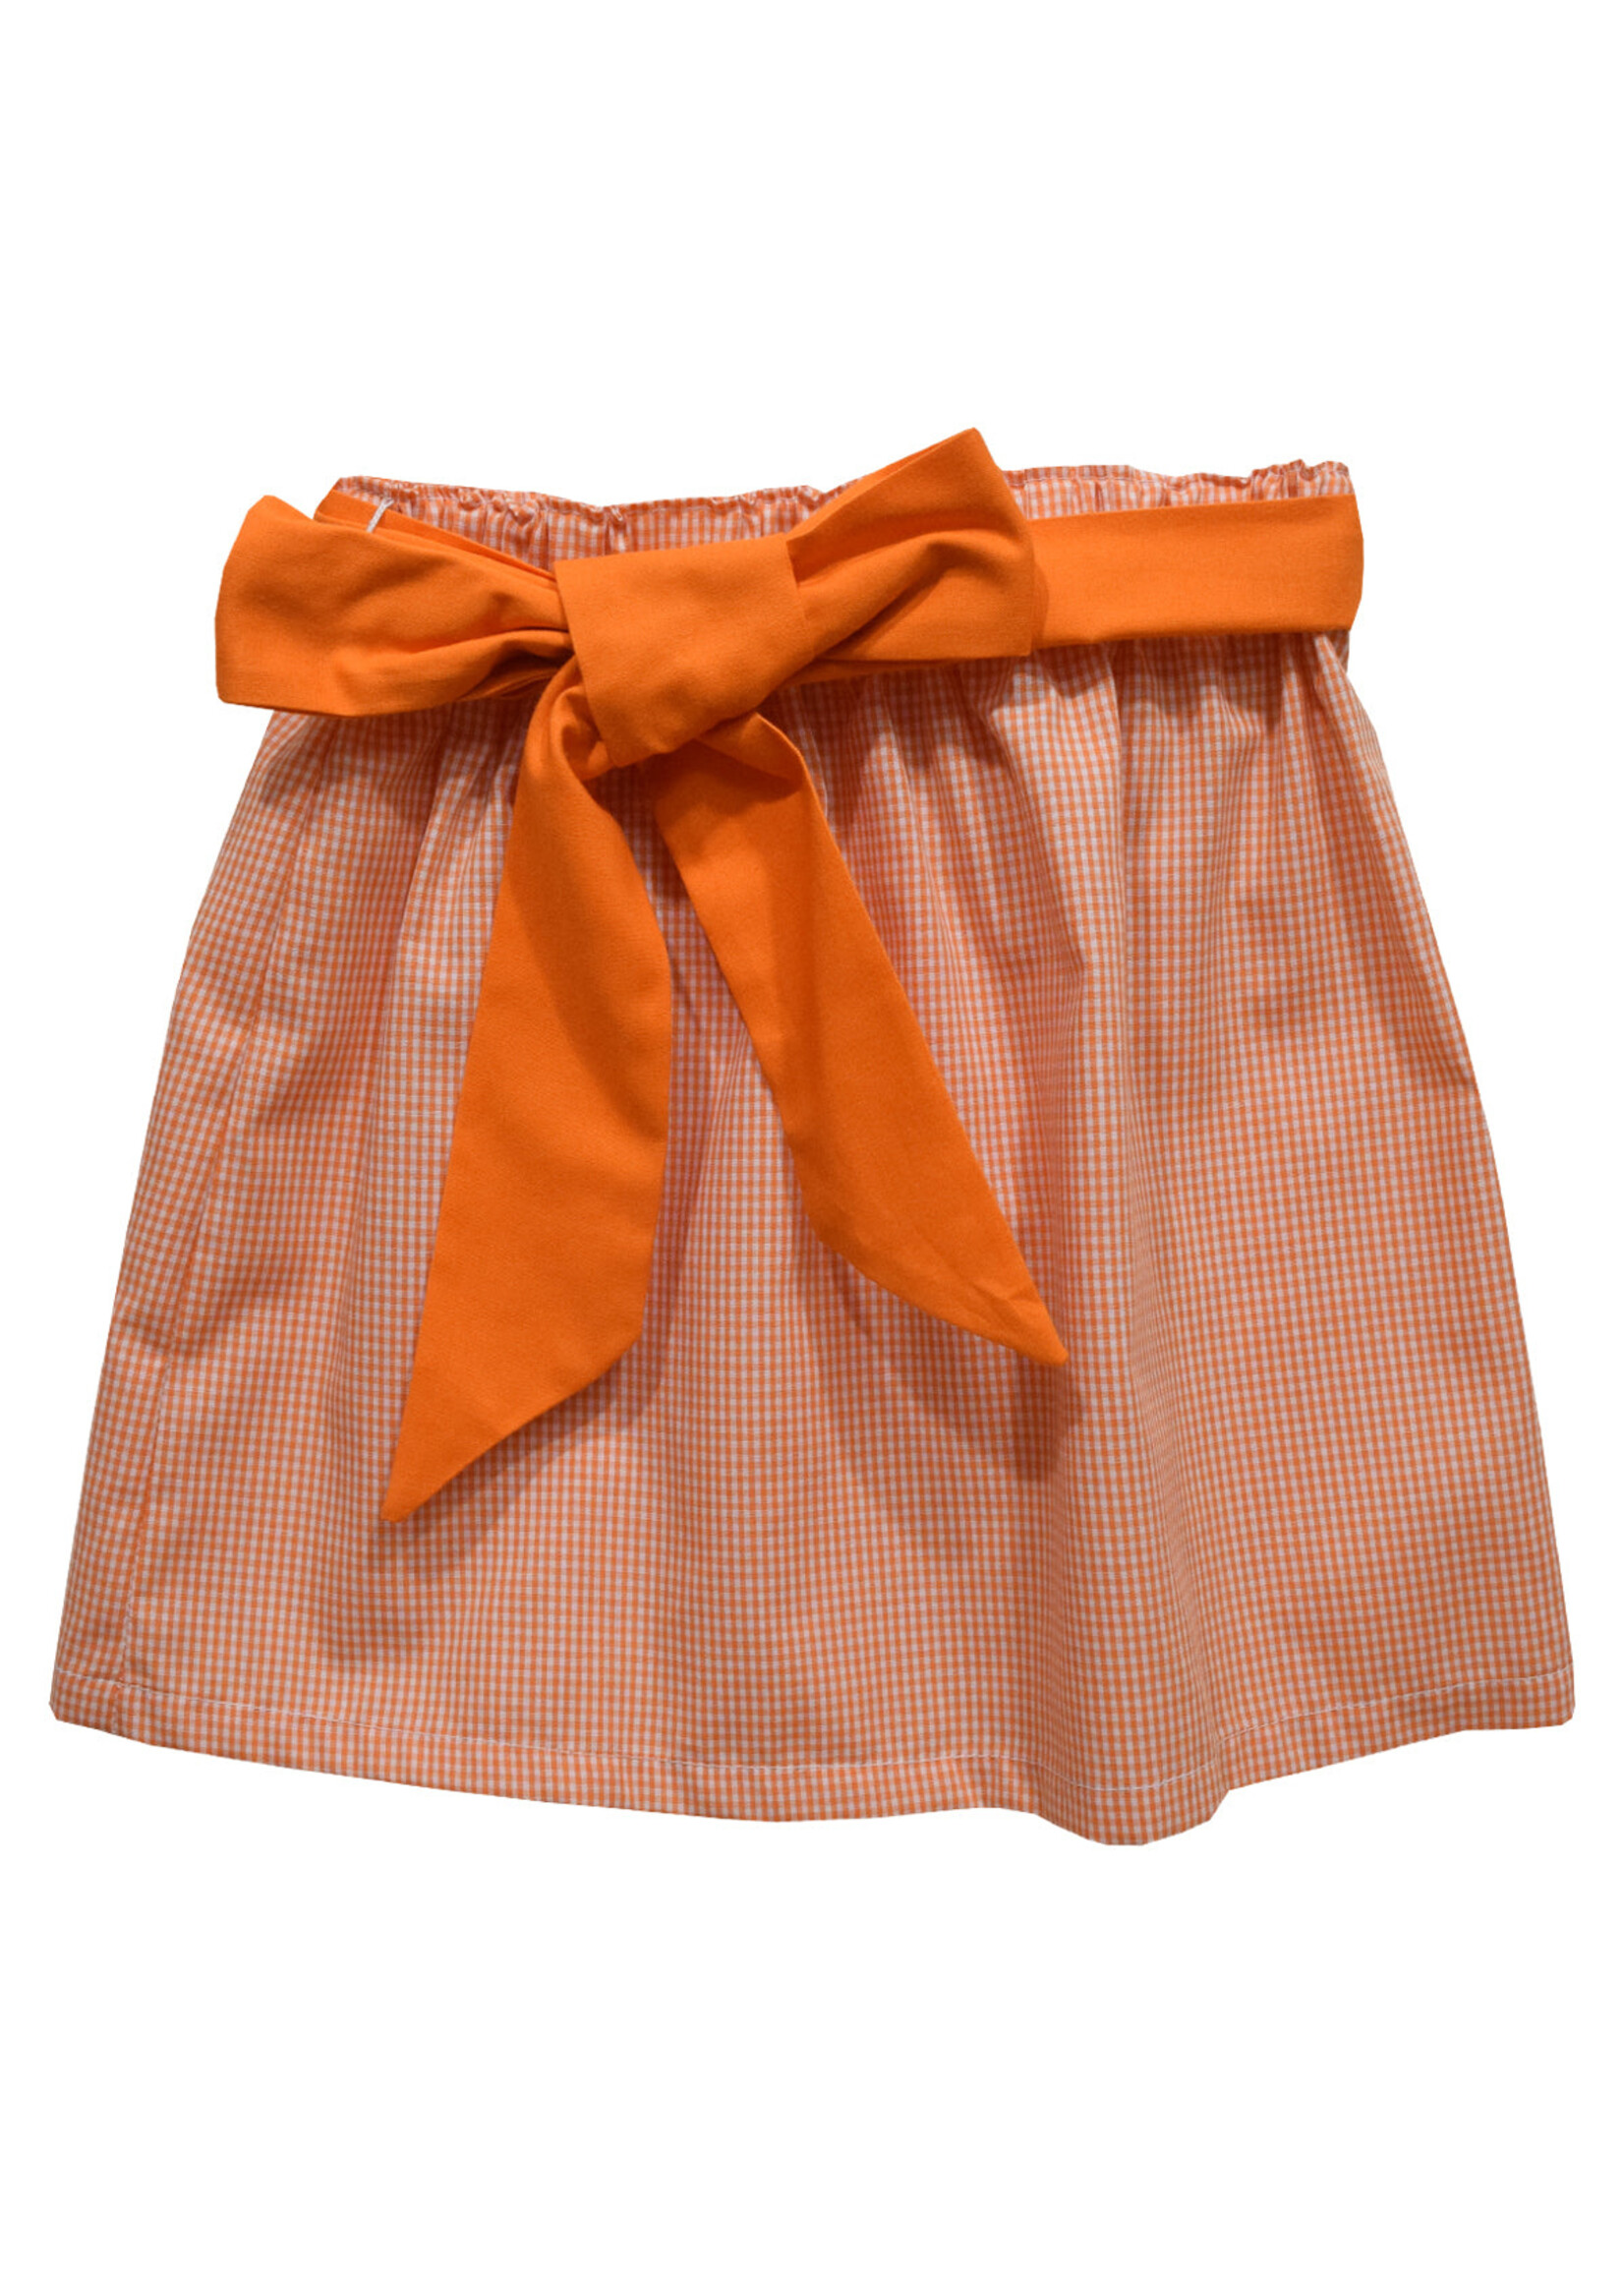 Vive La Fete Vive La Fete Orange Gingham  Skirt